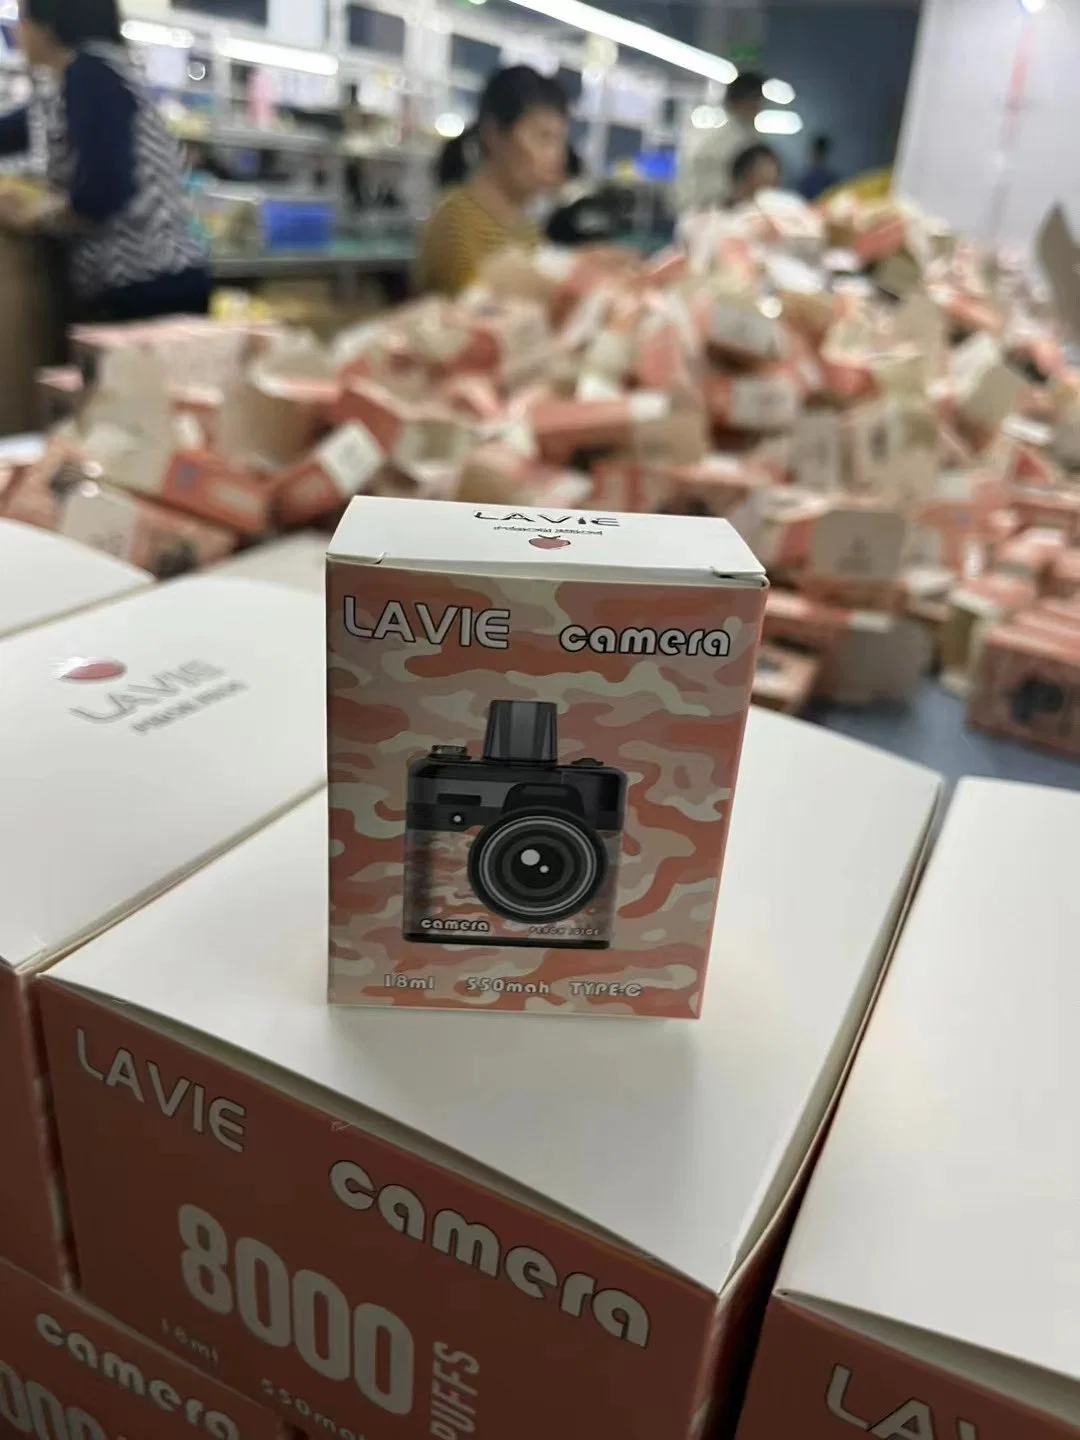 Usine de cigarettes électroniques jetables Lavie Camera E-Cig modèle 8000 Puff 8K Puffs Vape Pen